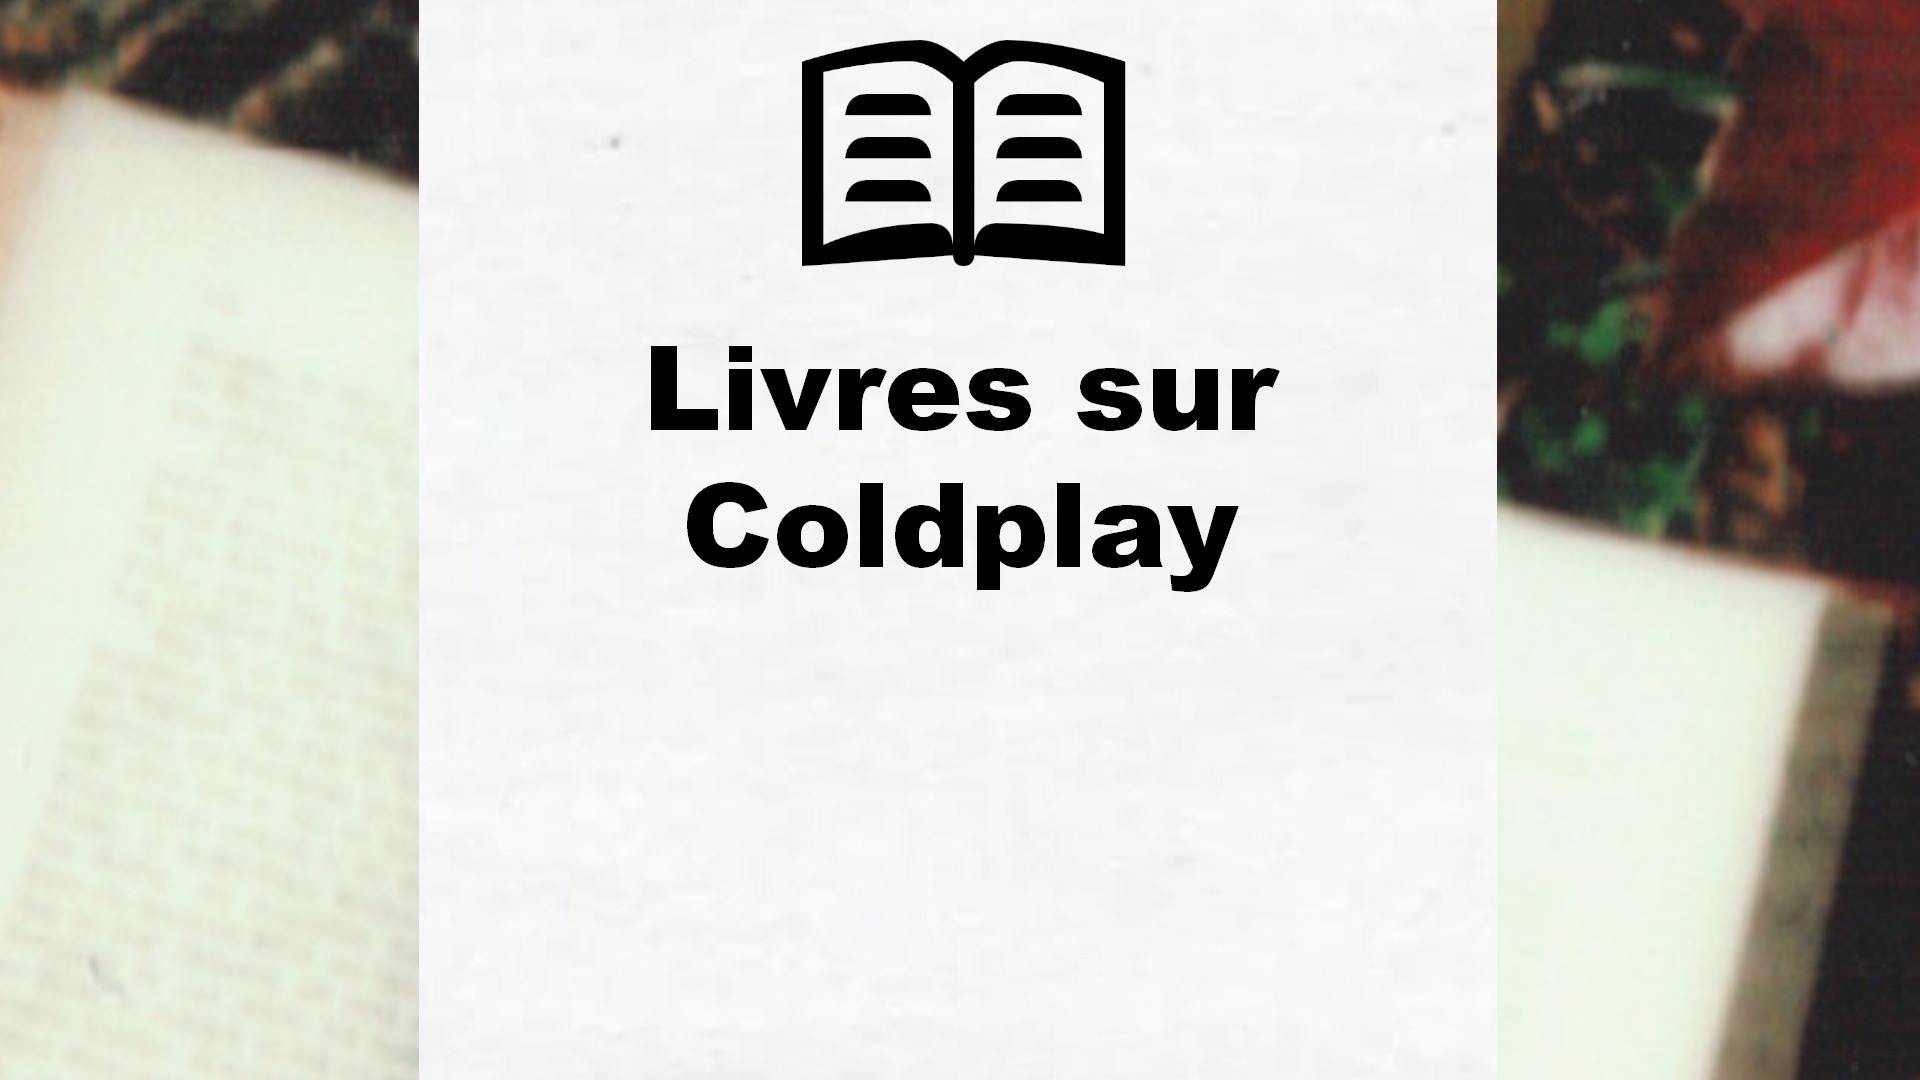 Livres sur Coldplay